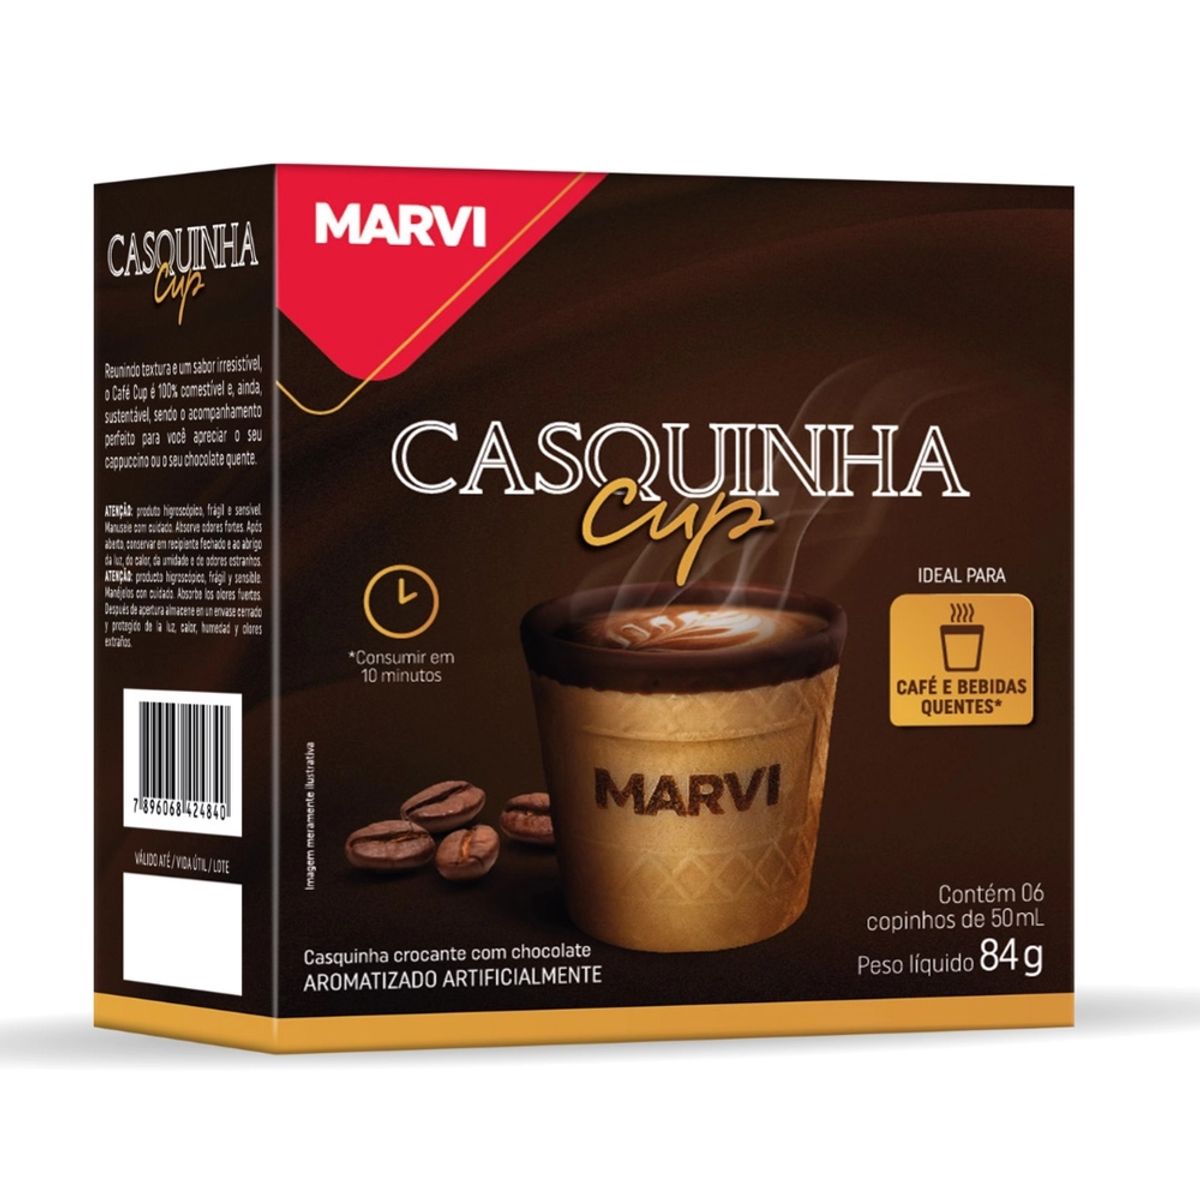 Casquinha Cup Marvi para Cafés e Bebidas Quentes 84g 6 Unidades de 50ml